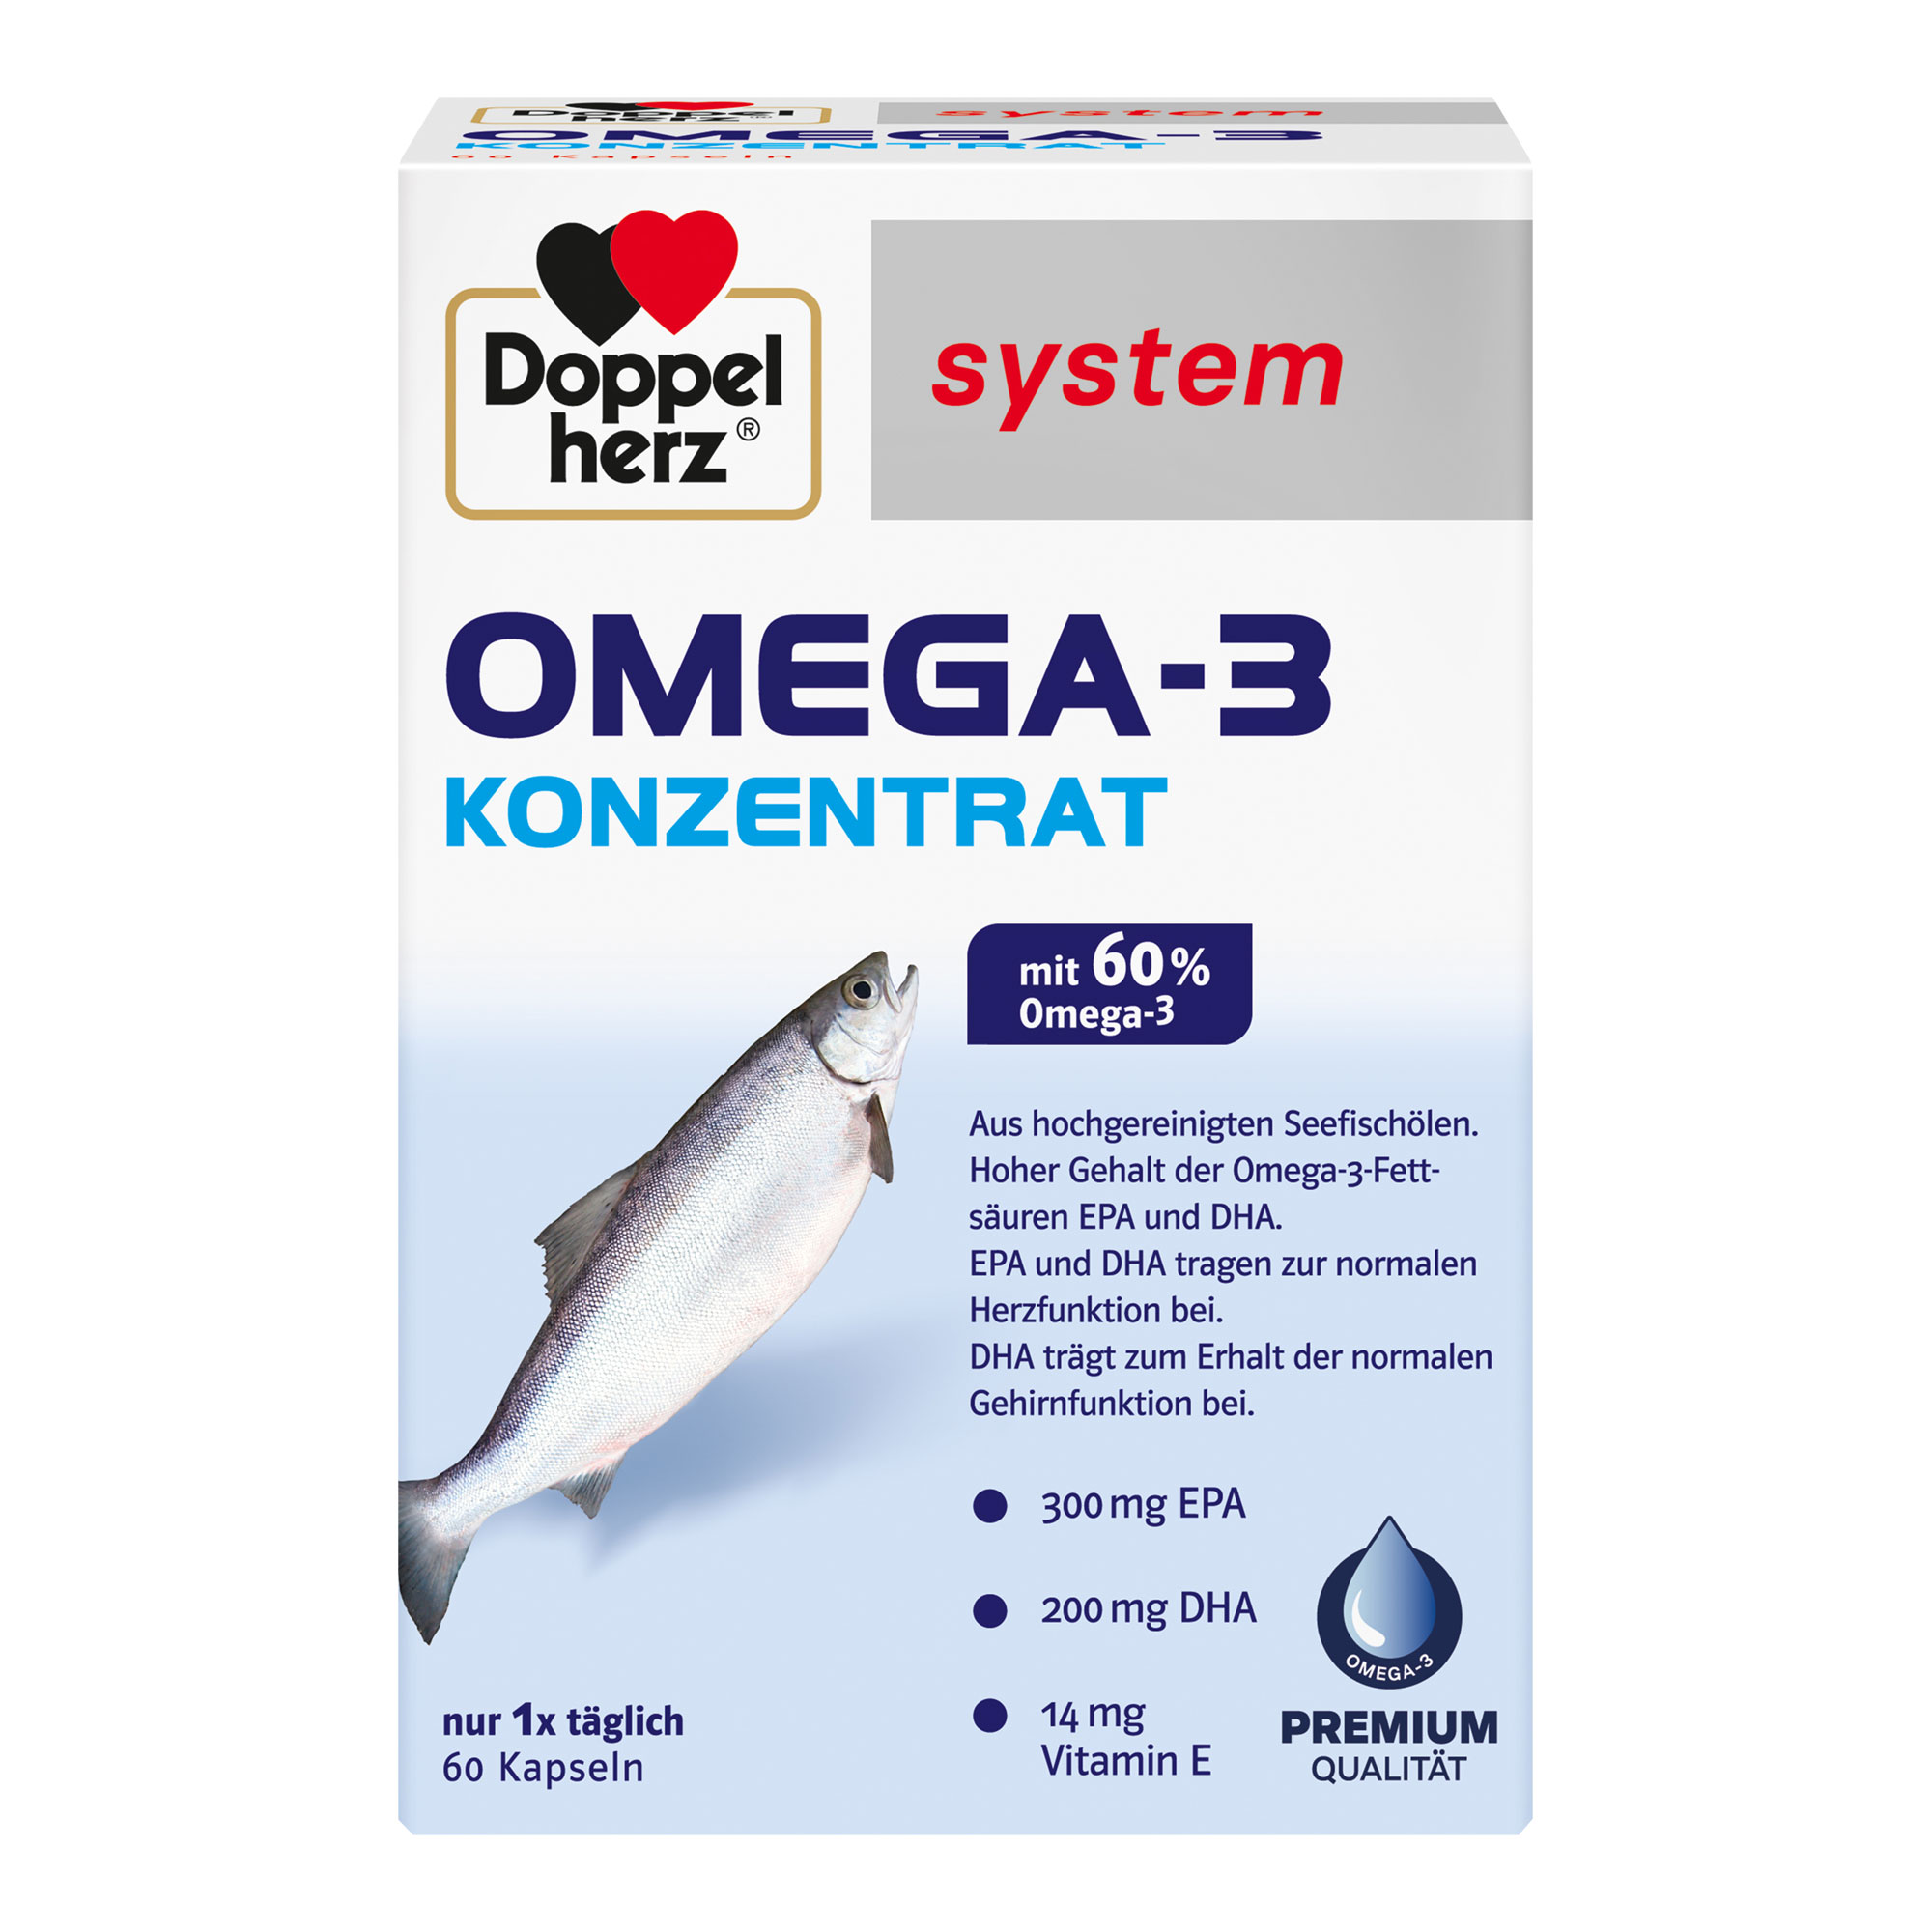 Nahrungsergänzungsmittek mit Omega-3 Konzentrat aus Seefischölen und Vitamin E.